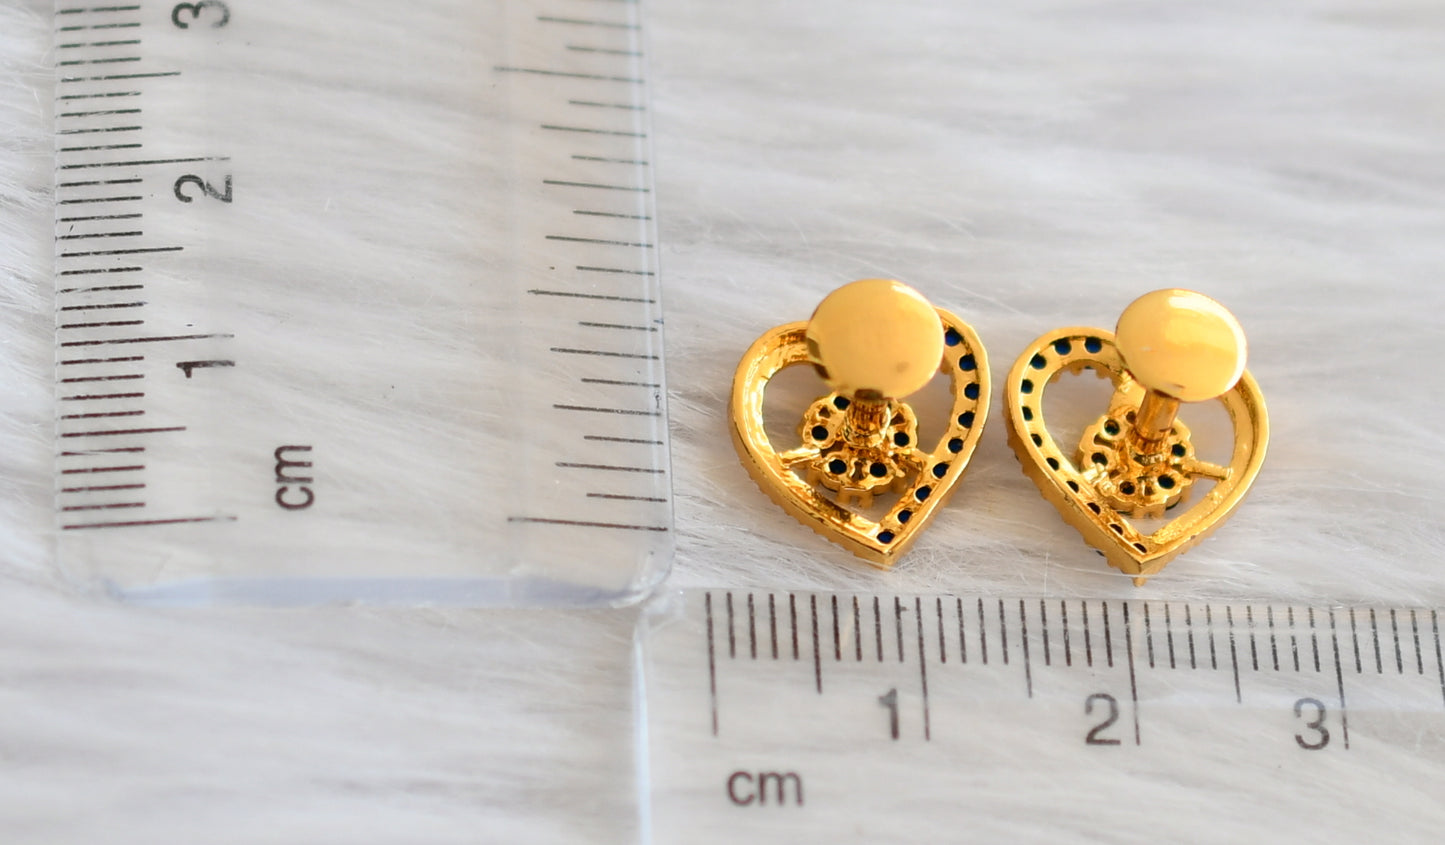 Gold tone ruby heart earrings/stud dj-45932